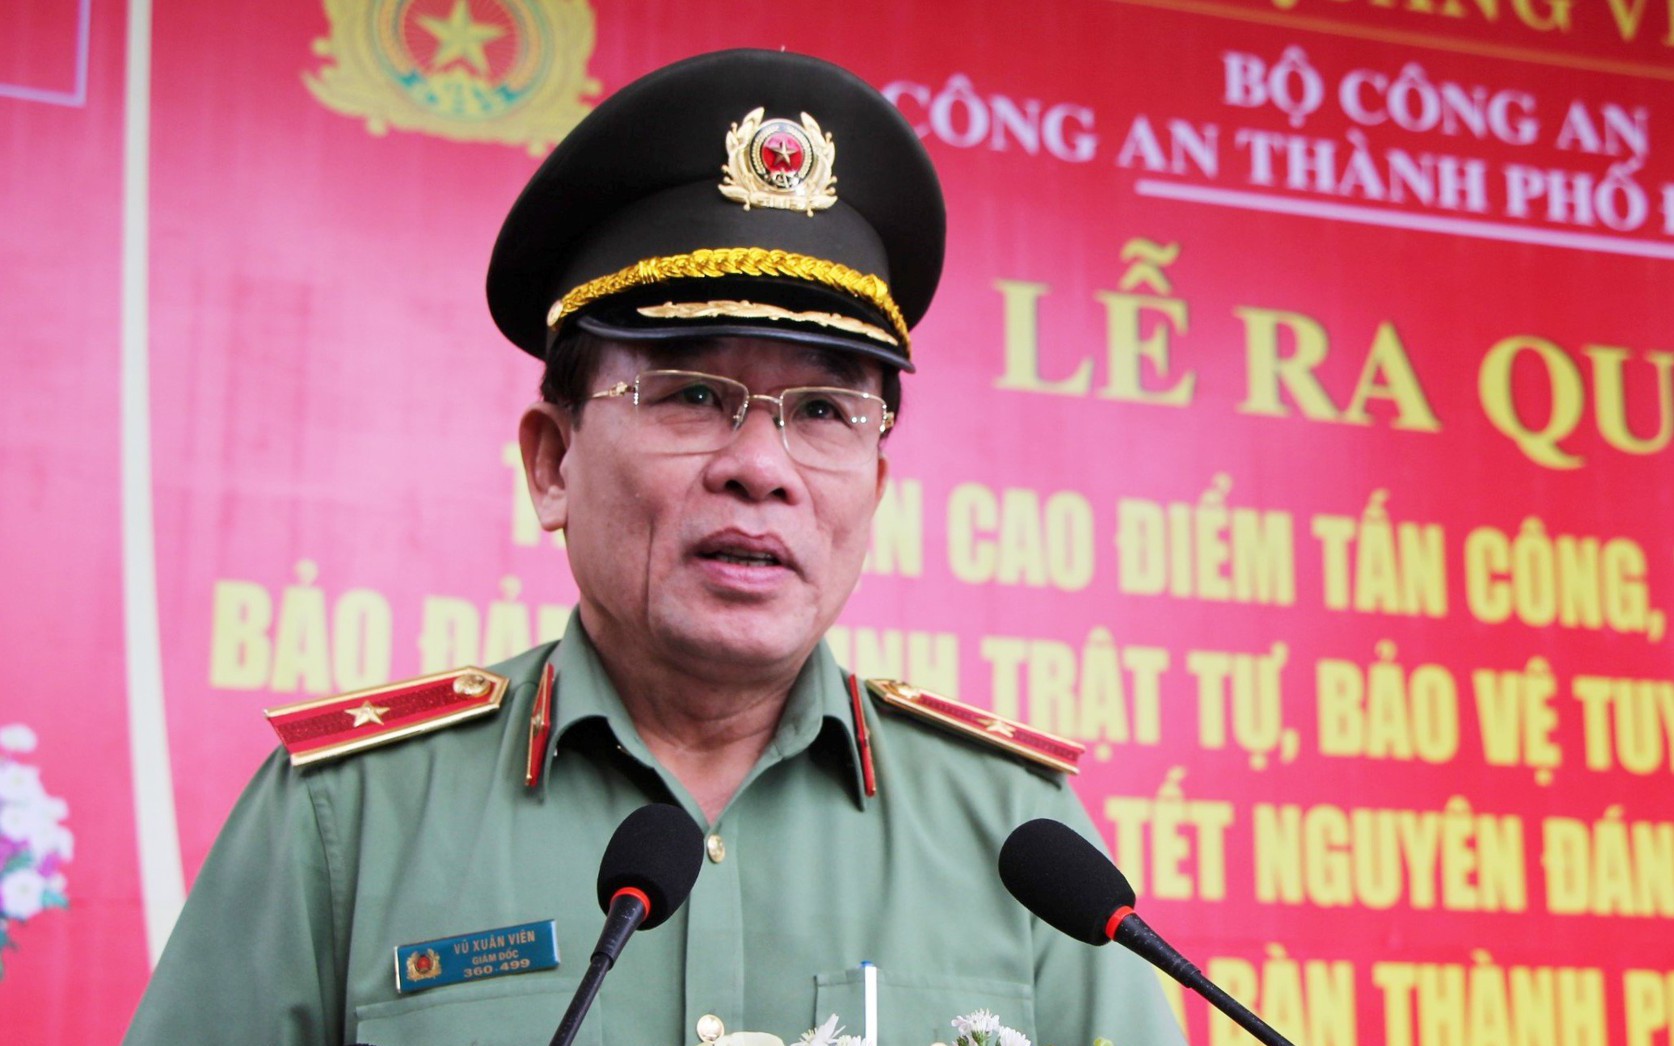 Giám đốc Công an Đà Nẵng nói về đảm bảo an ninh trật tự dịp cuối năm